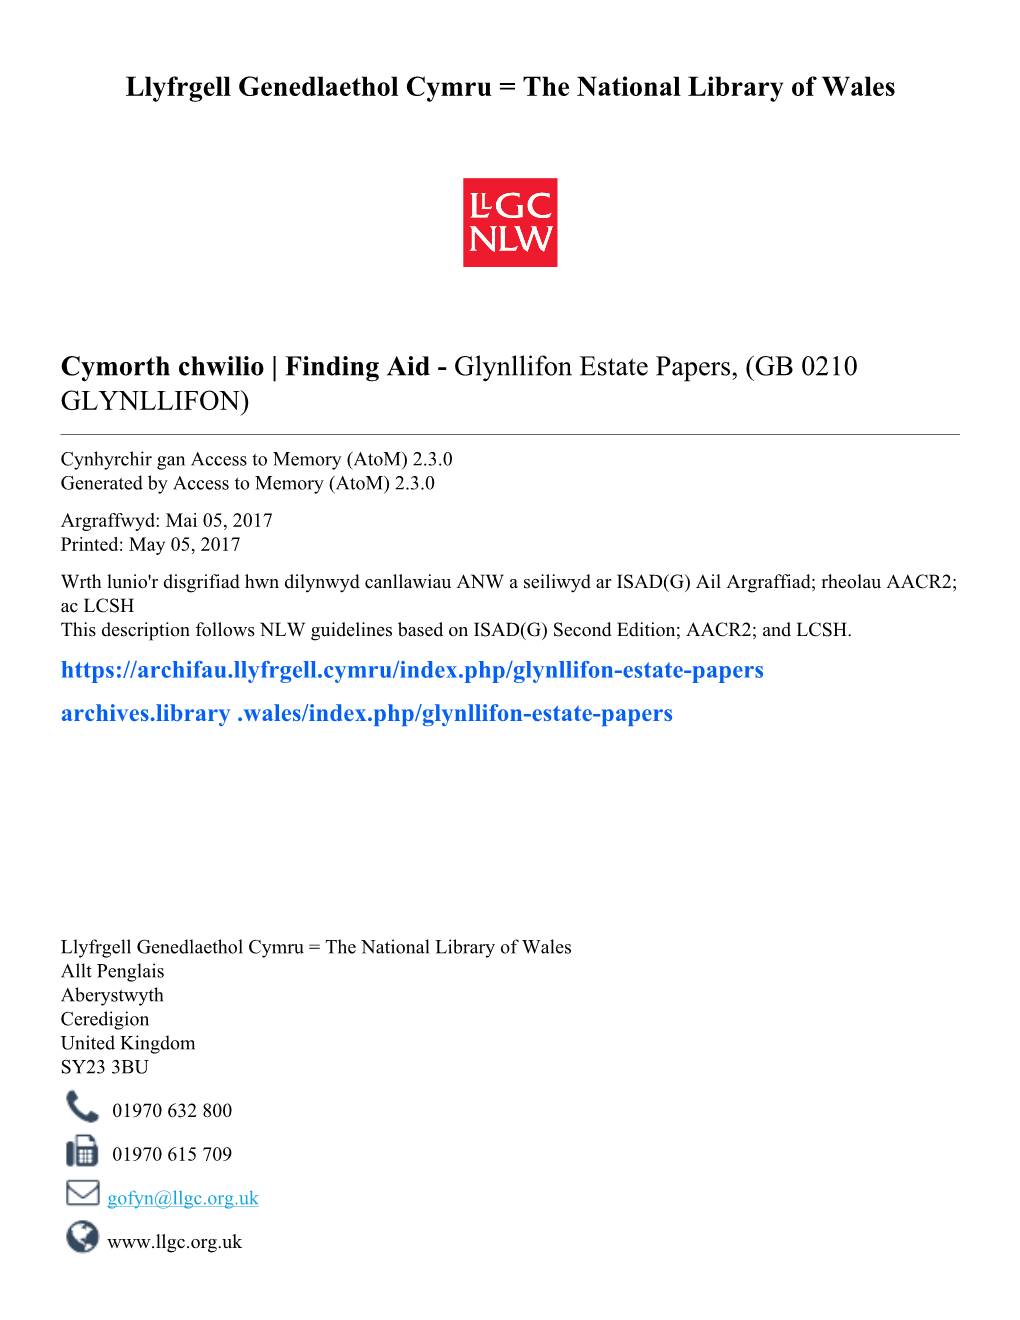 Glynllifon Estate Papers, (GB 0210 GLYNLLIFON)